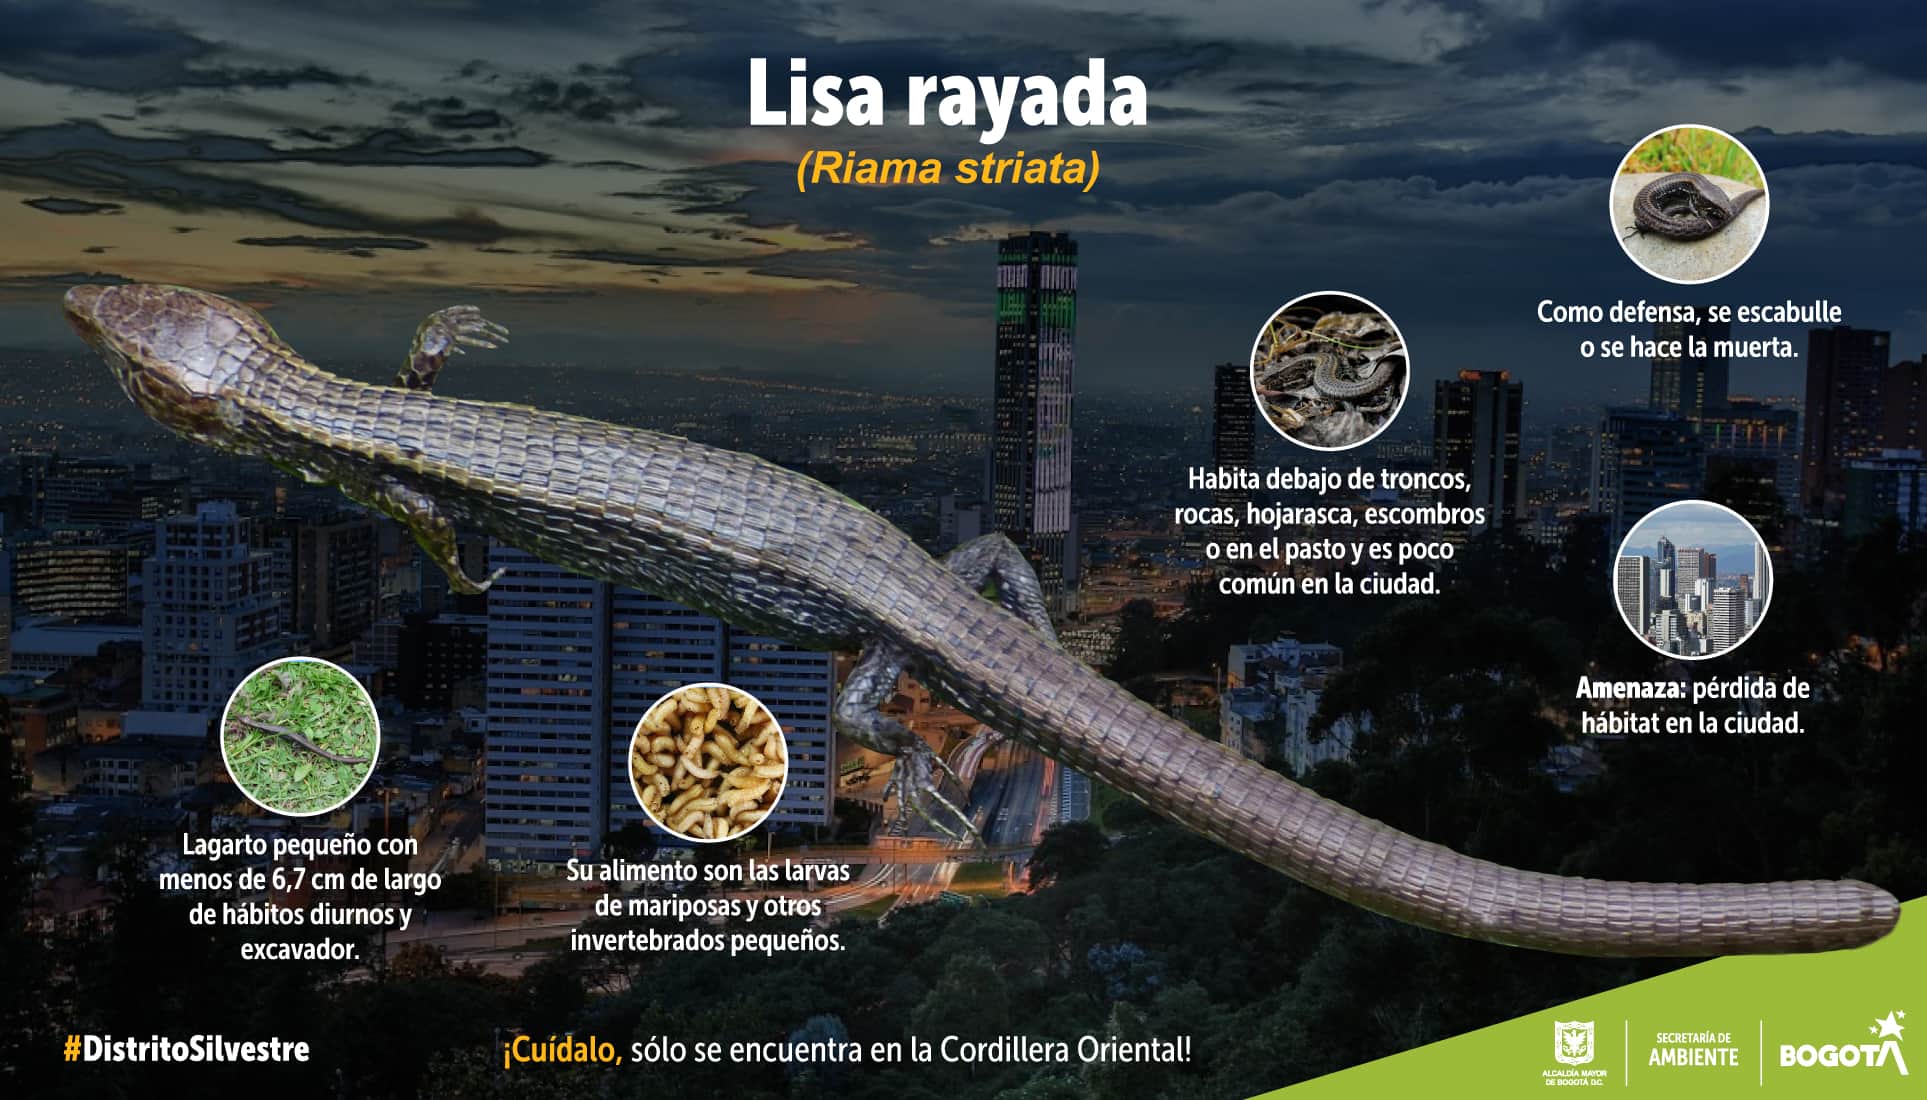 El reptil que enriquece la biodiversidad de los Cerros Orientales de Bogotá